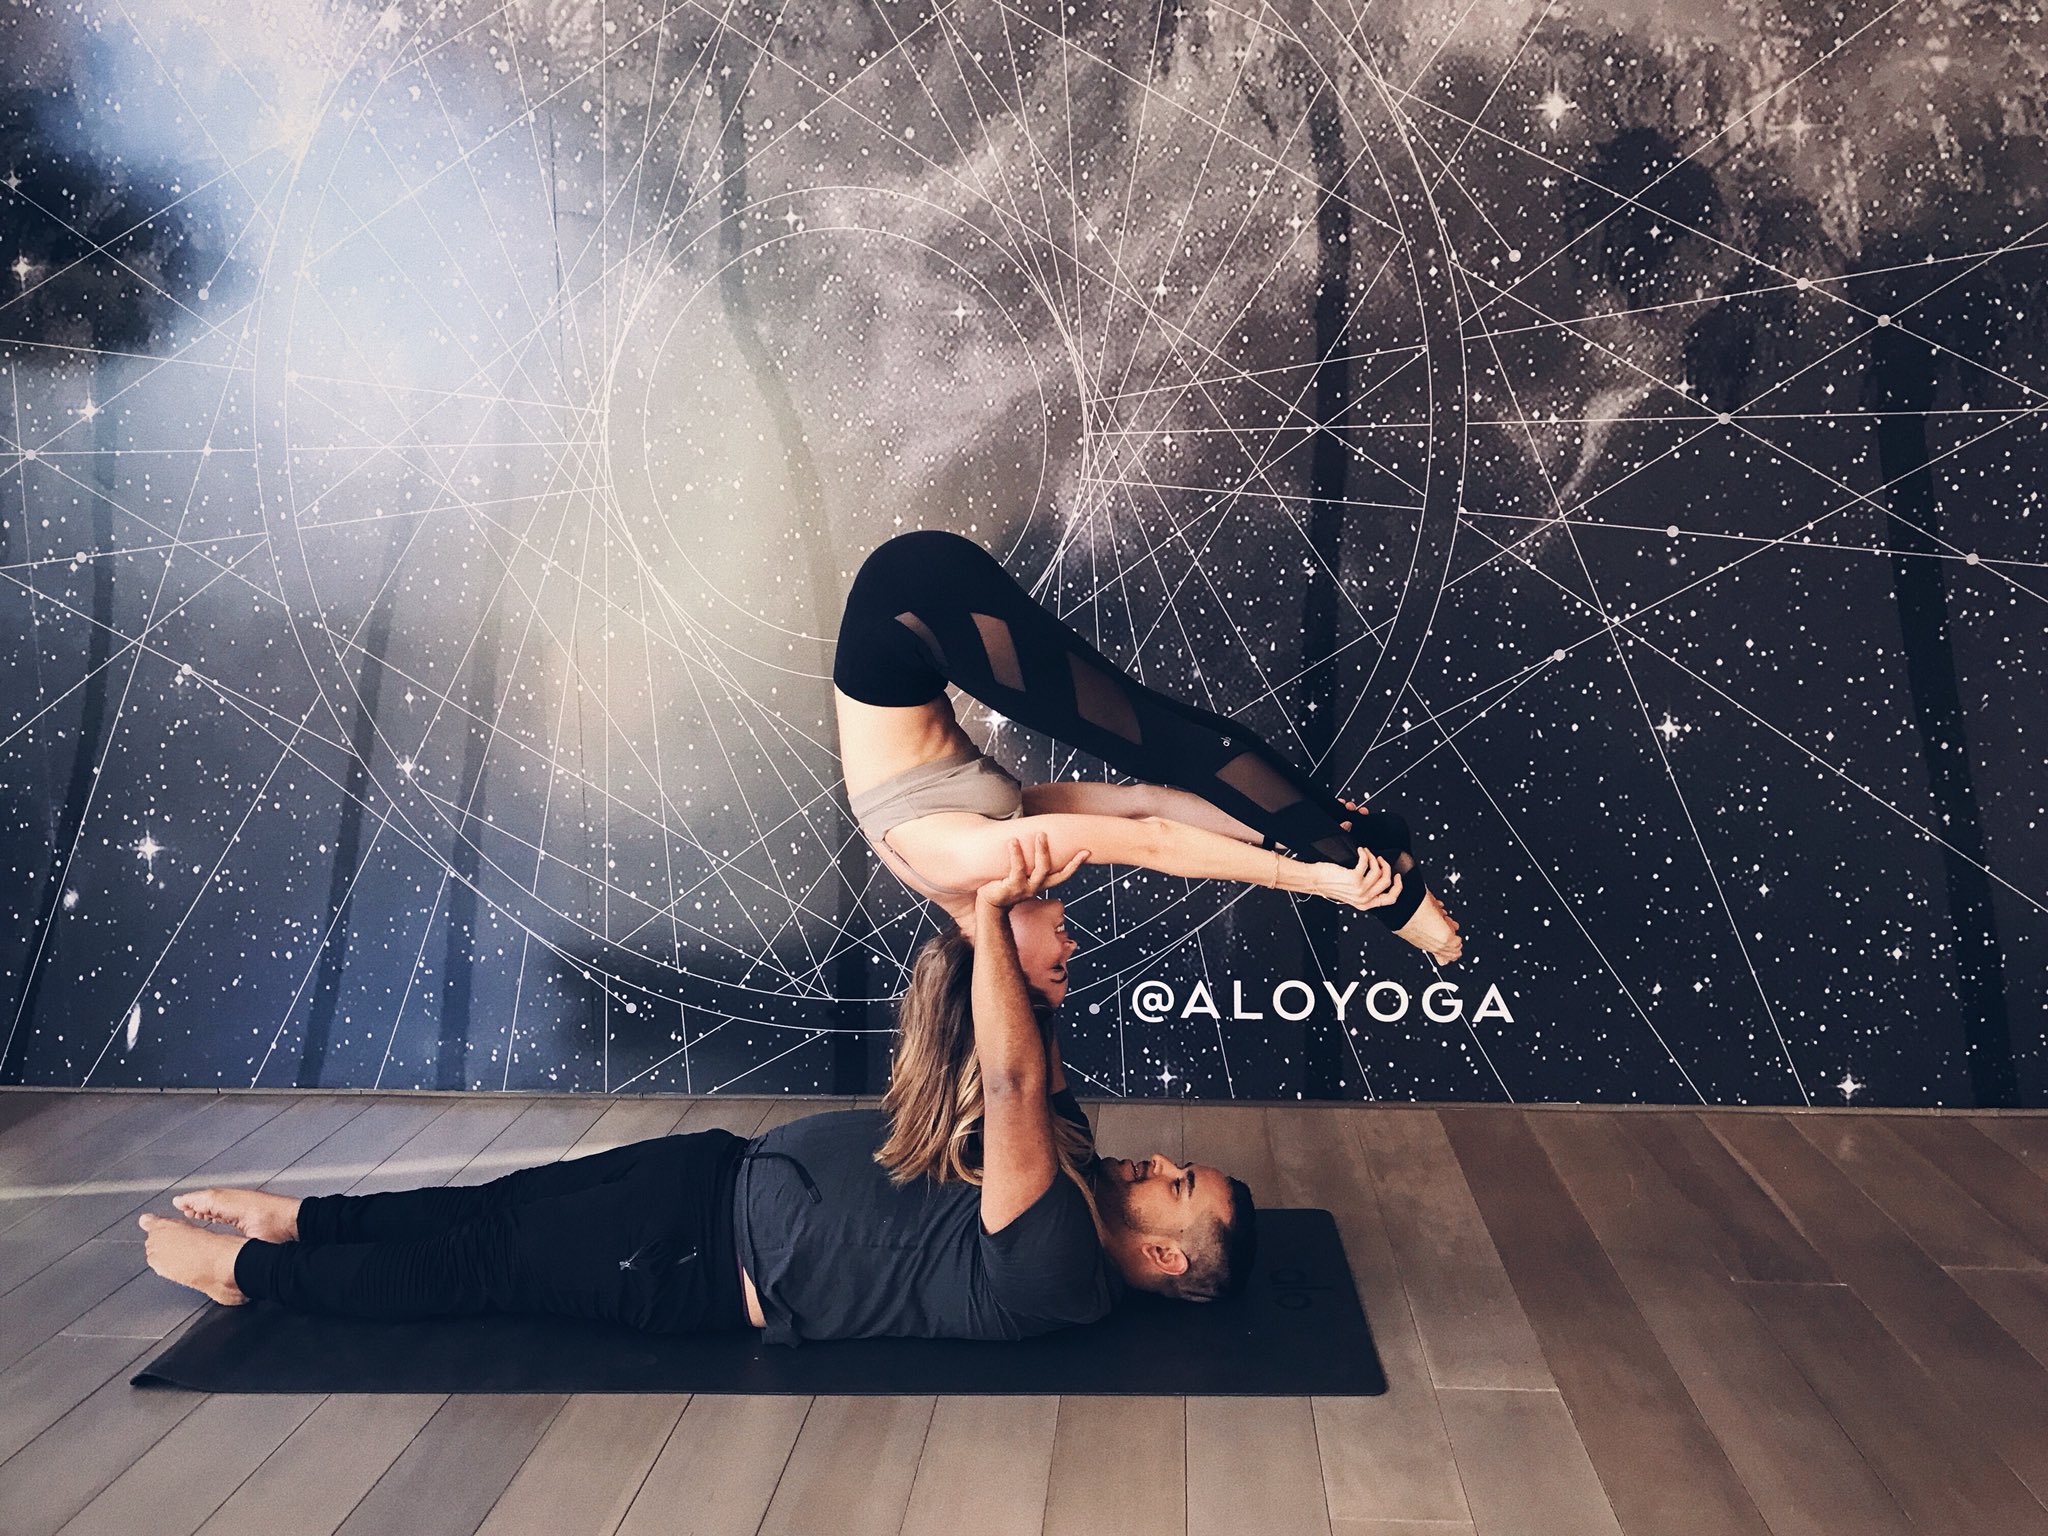 debby-ryan-doing-yoga-32918-twitter-and-instagram.jpg